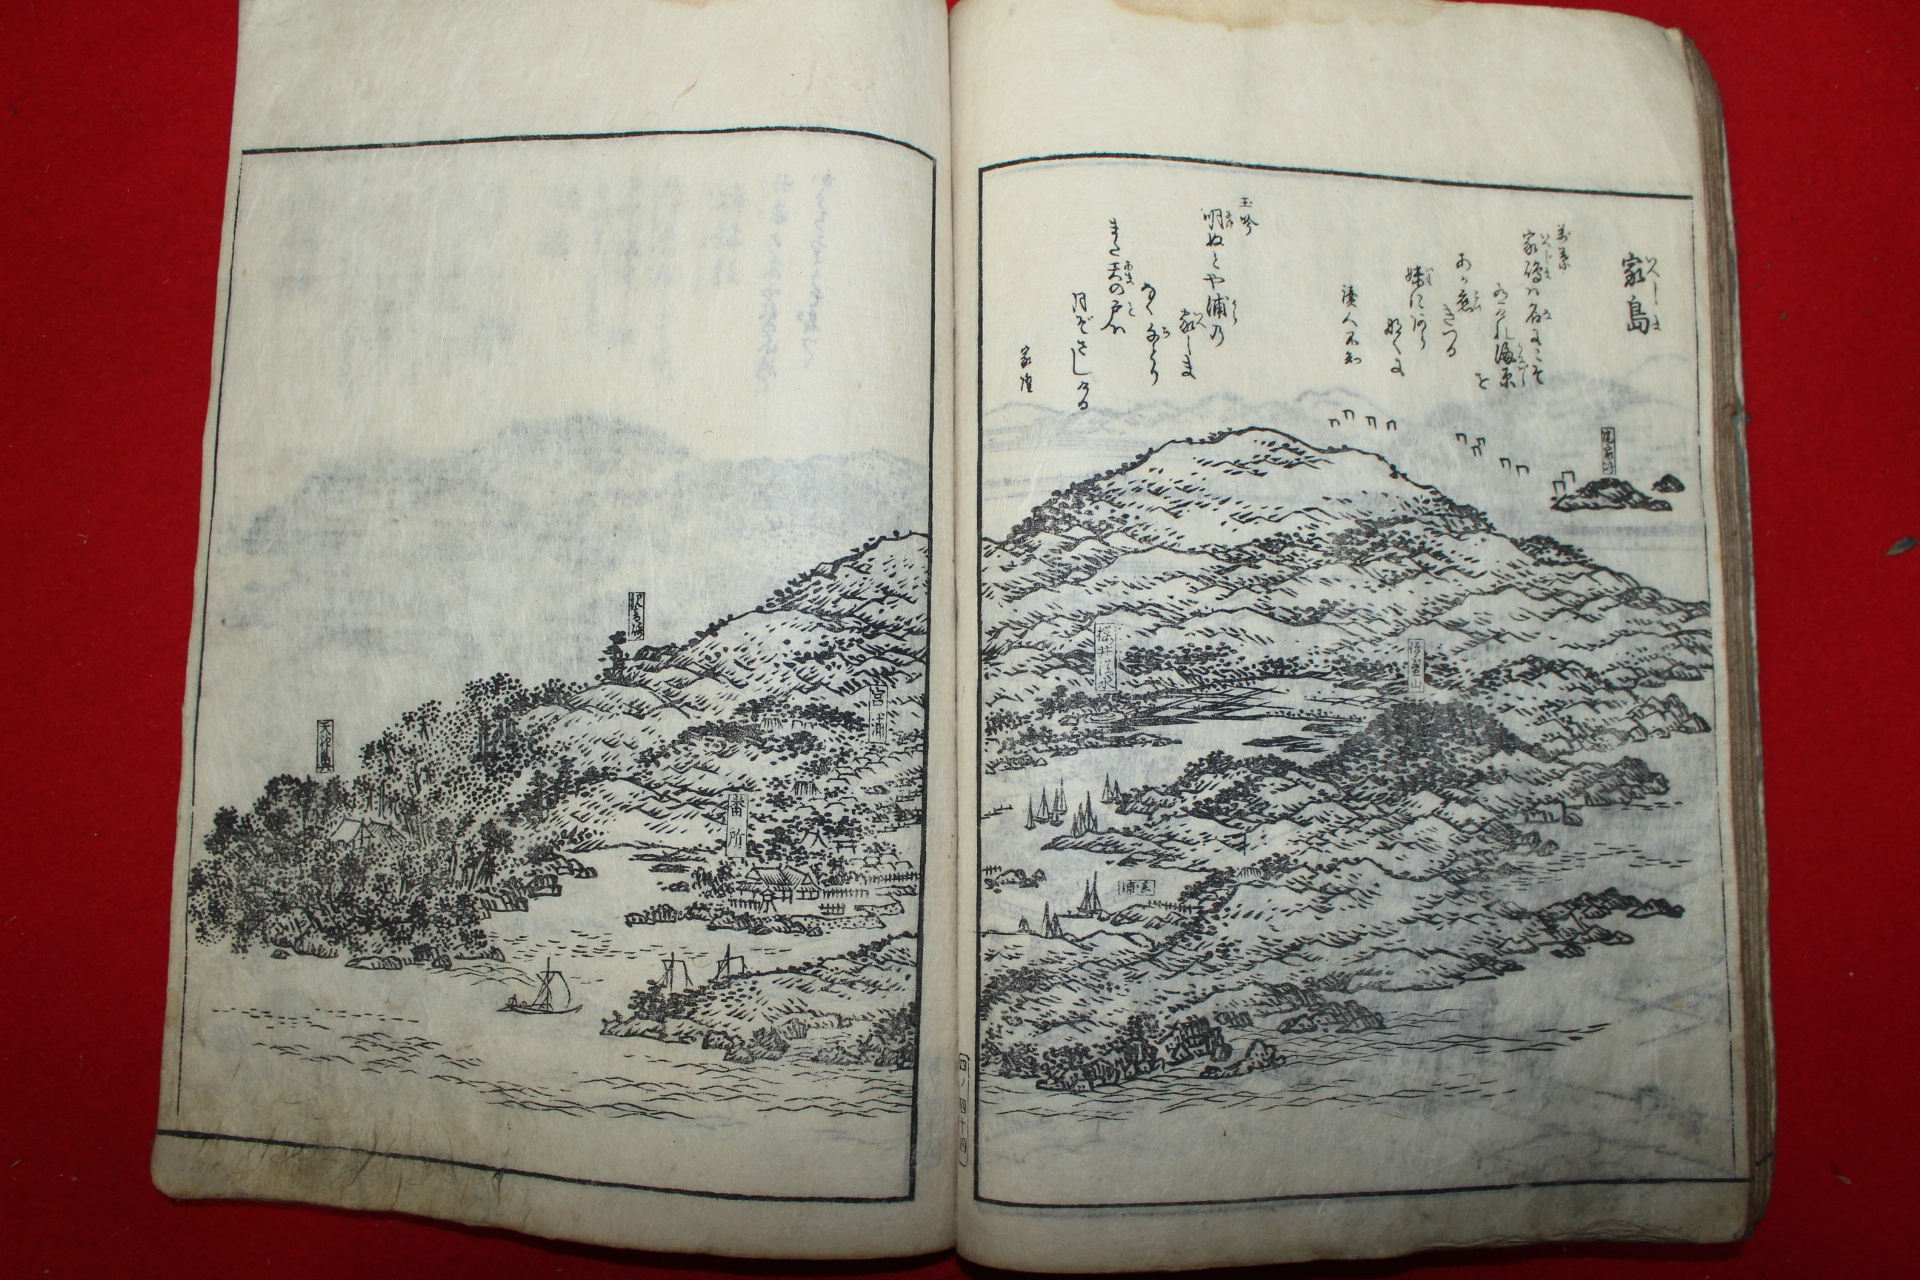 에도시기 일본목판본 파마명소순람도회(播磨名所巡覽圖會)권4  1책